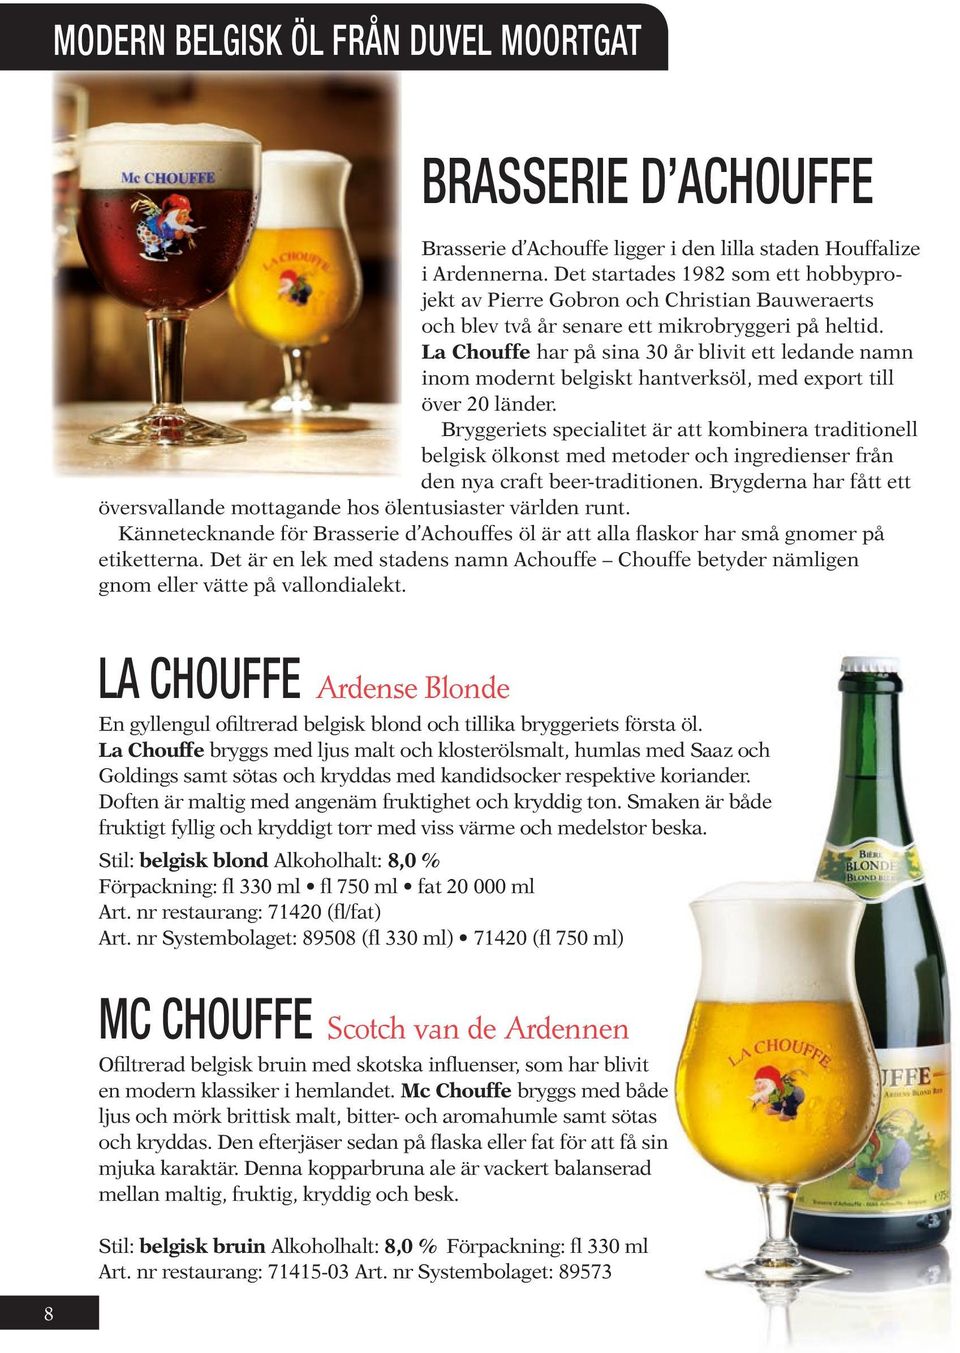 La Chouffe har på sina 30 år blivit ett ledande namn inom modernt belgiskt hantverksöl, med export till över 20 länder.